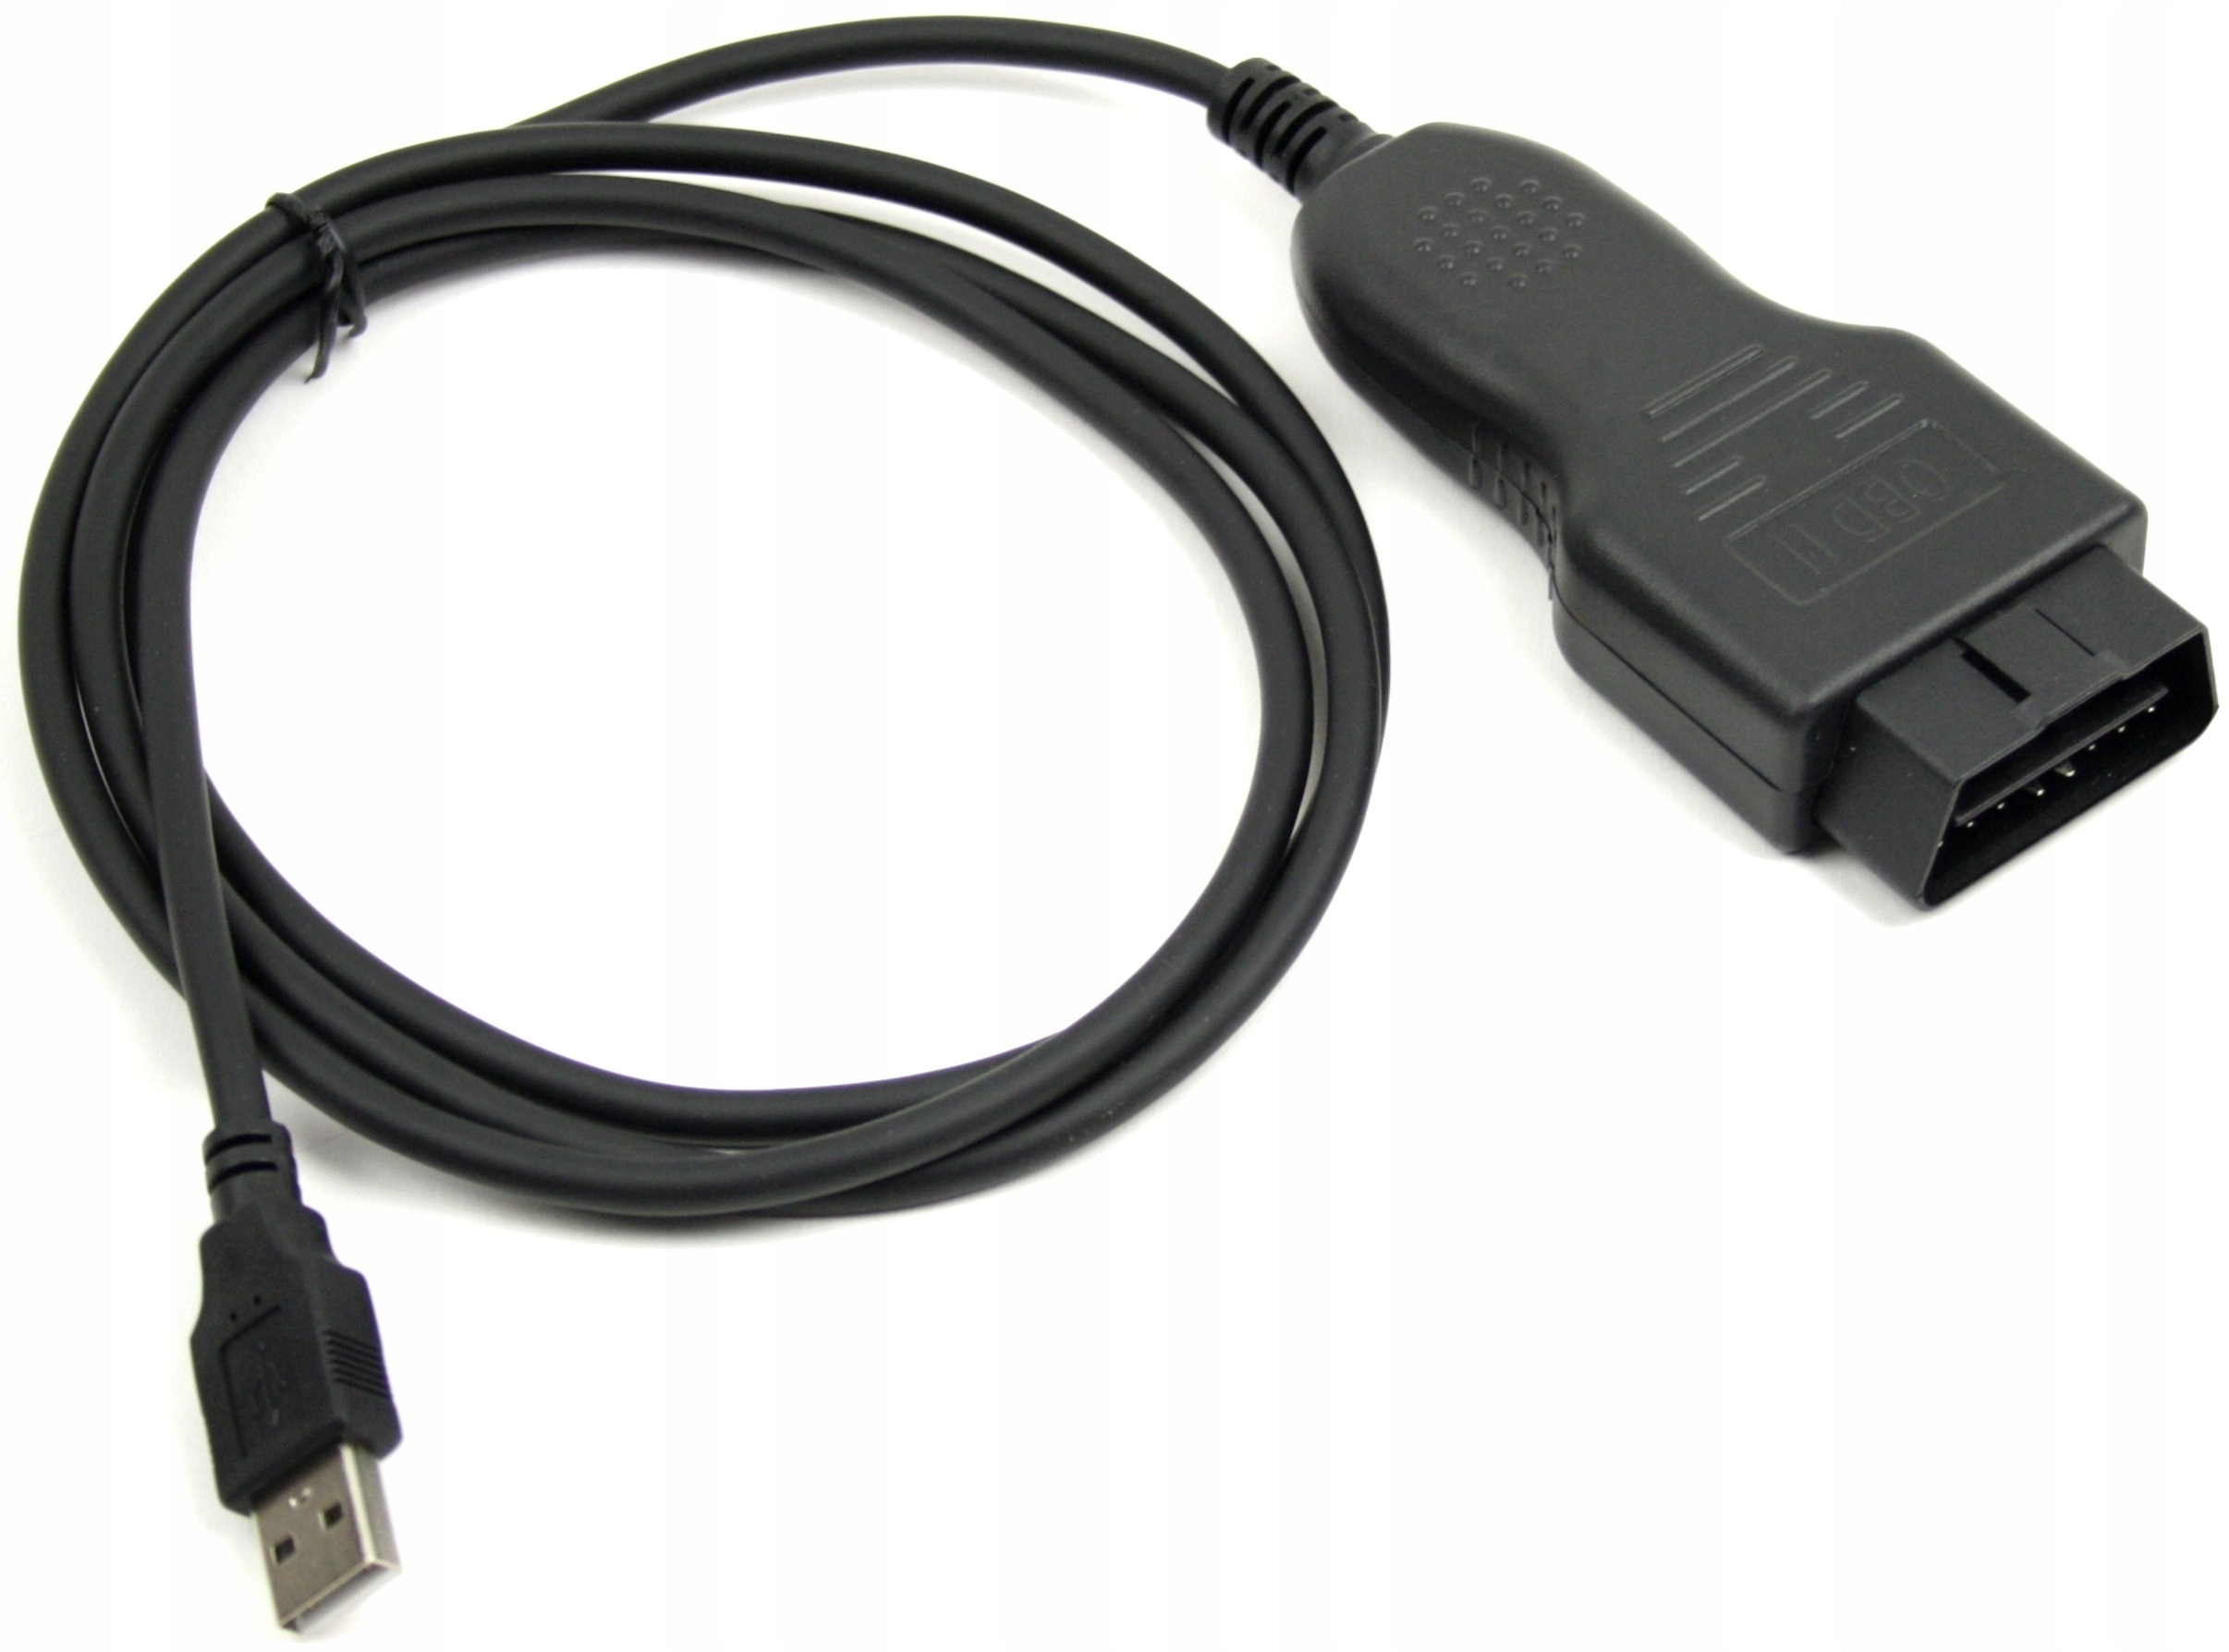 INTERFEJS DIAGNOSTYCZNY VAG CAN COMMANDER 5.5 OBD OBD2 USB AUDI VOLKSWAGEN SKODA SEAT - Narzędzia warsztatowe